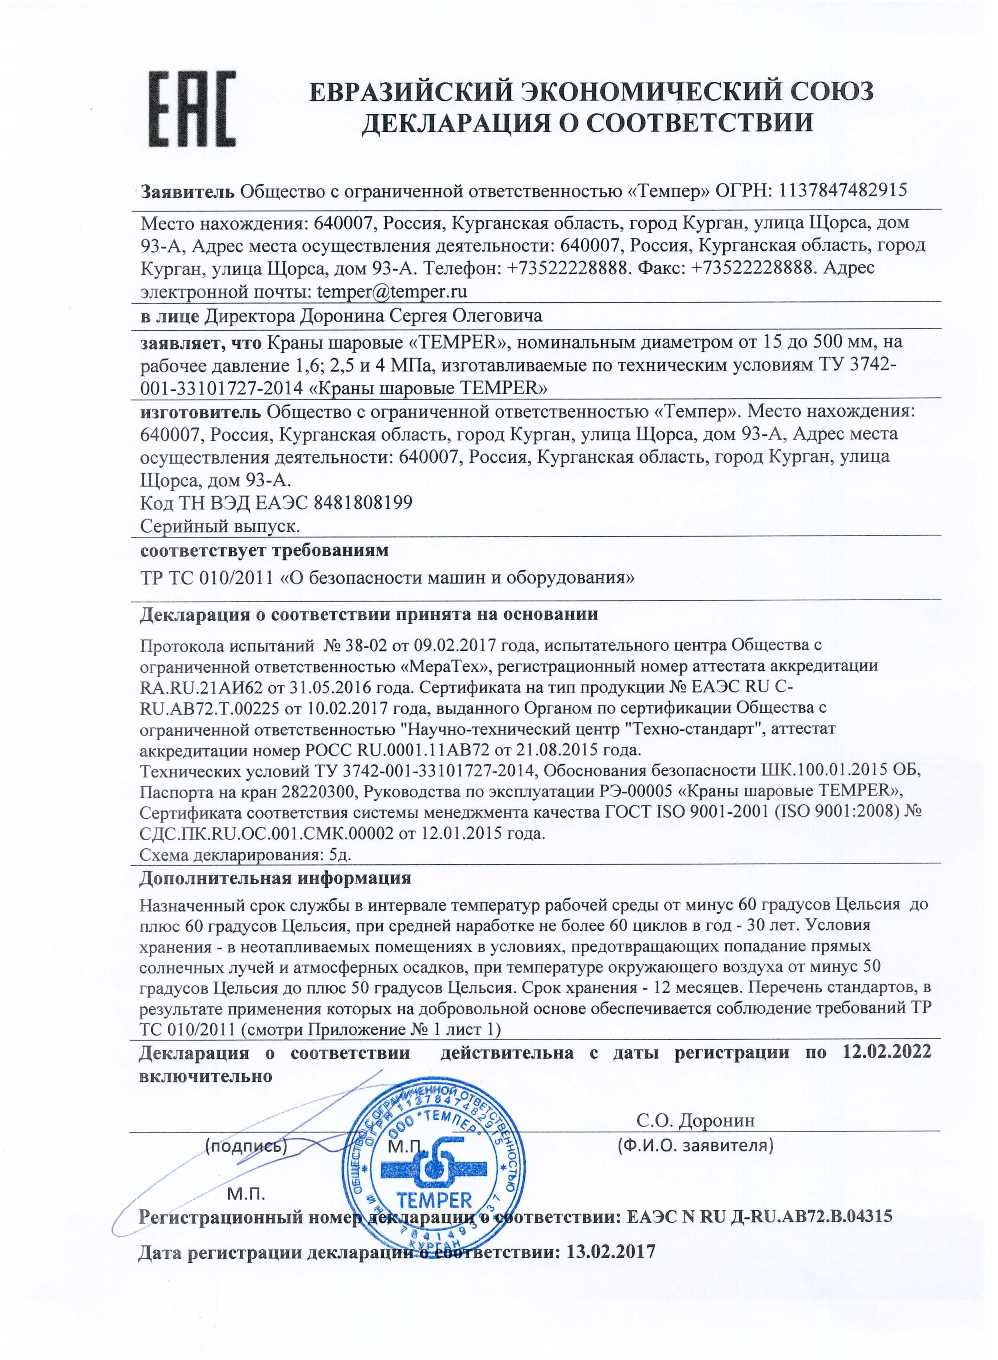 Сертификат дилера "НефтеГазСервис" на краны шаровые